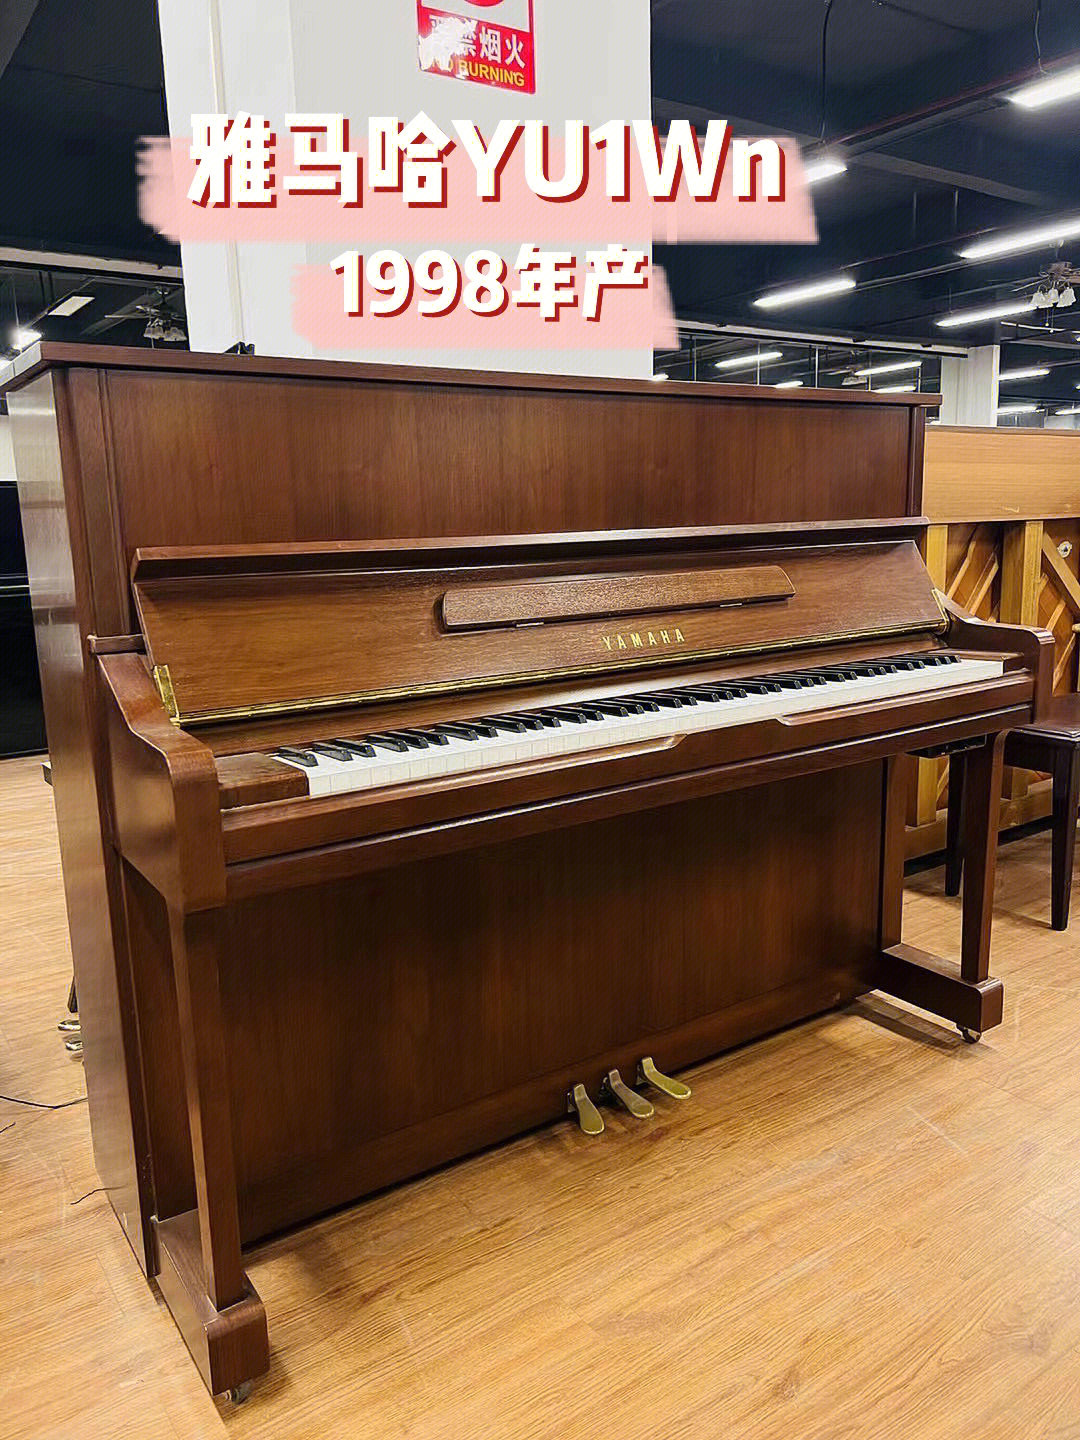 1998年产雅马哈yu1wn年份新的原木色钢琴